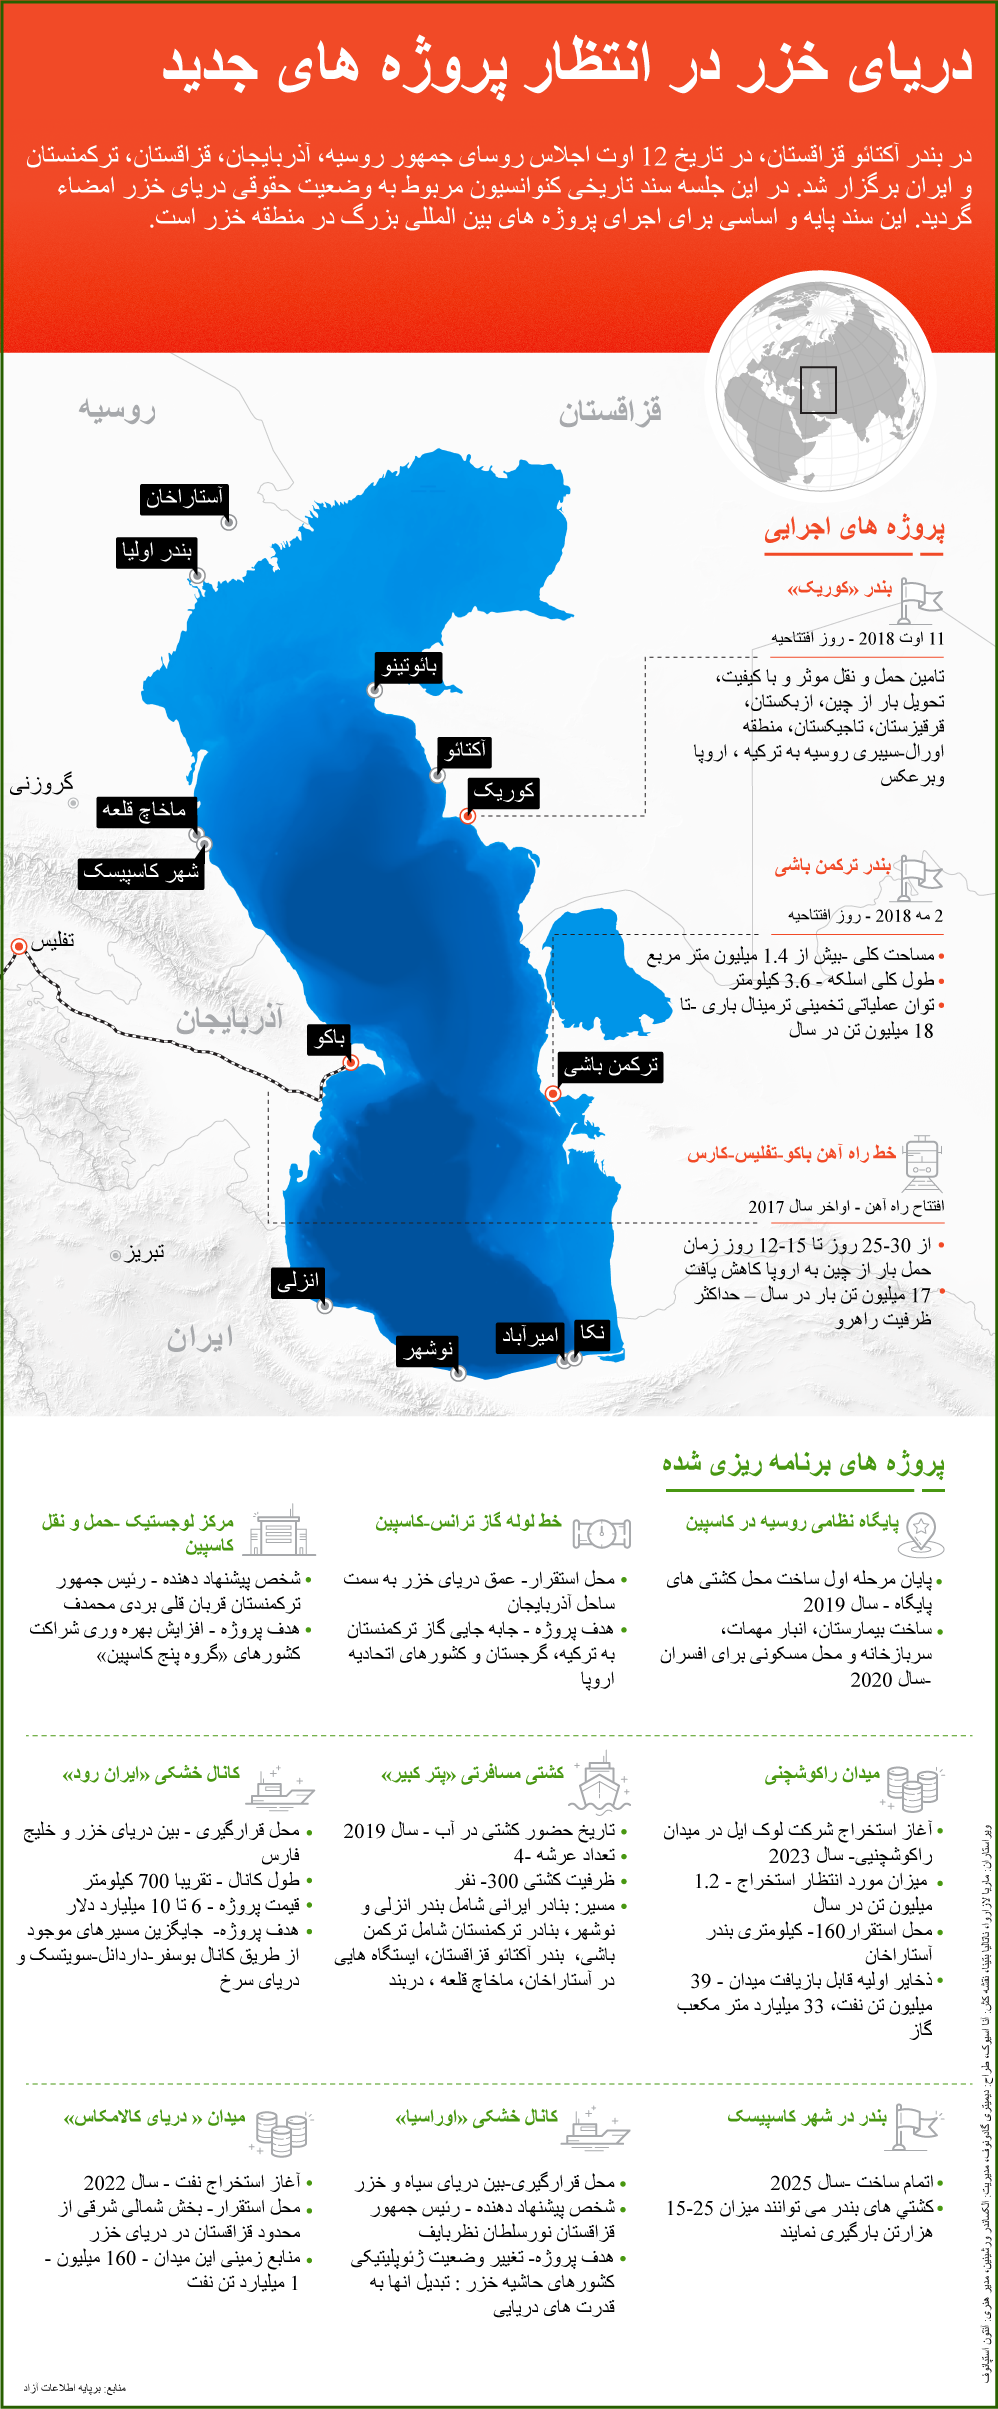 دریای خزر در انتظار پروژه های جدید - اسپوتنیک ایران  